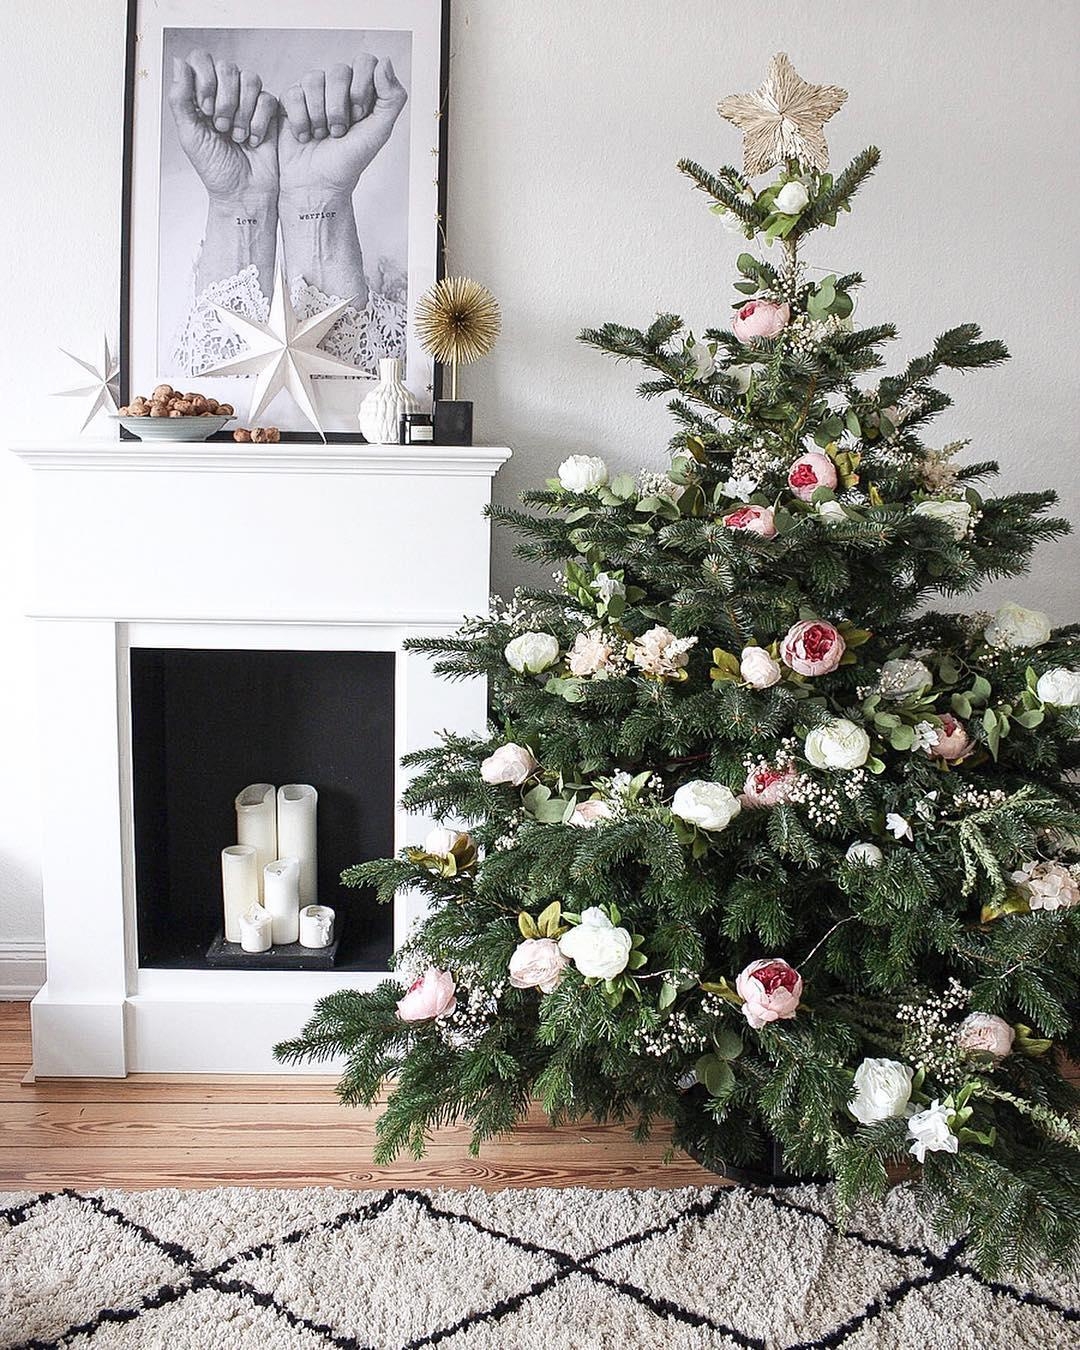 Unser #Weihnachtsbaum in der blumigen #DIY Variante.
#xmas #weihnachten #weihnachtsdeko #blumen #kamin #boho 